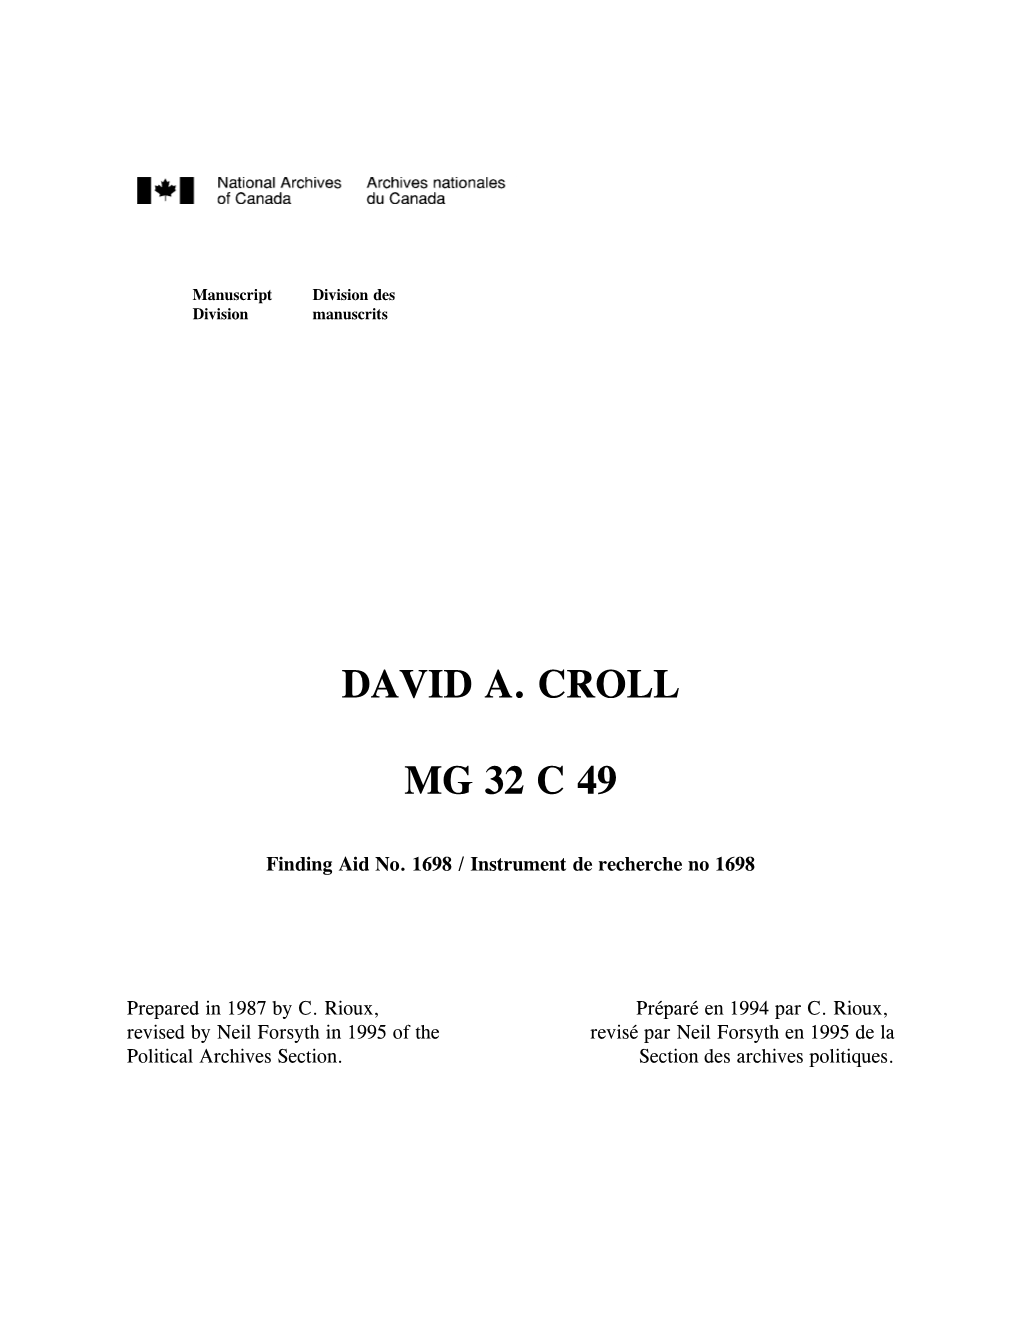 David A. Croll Mg 32 C 49